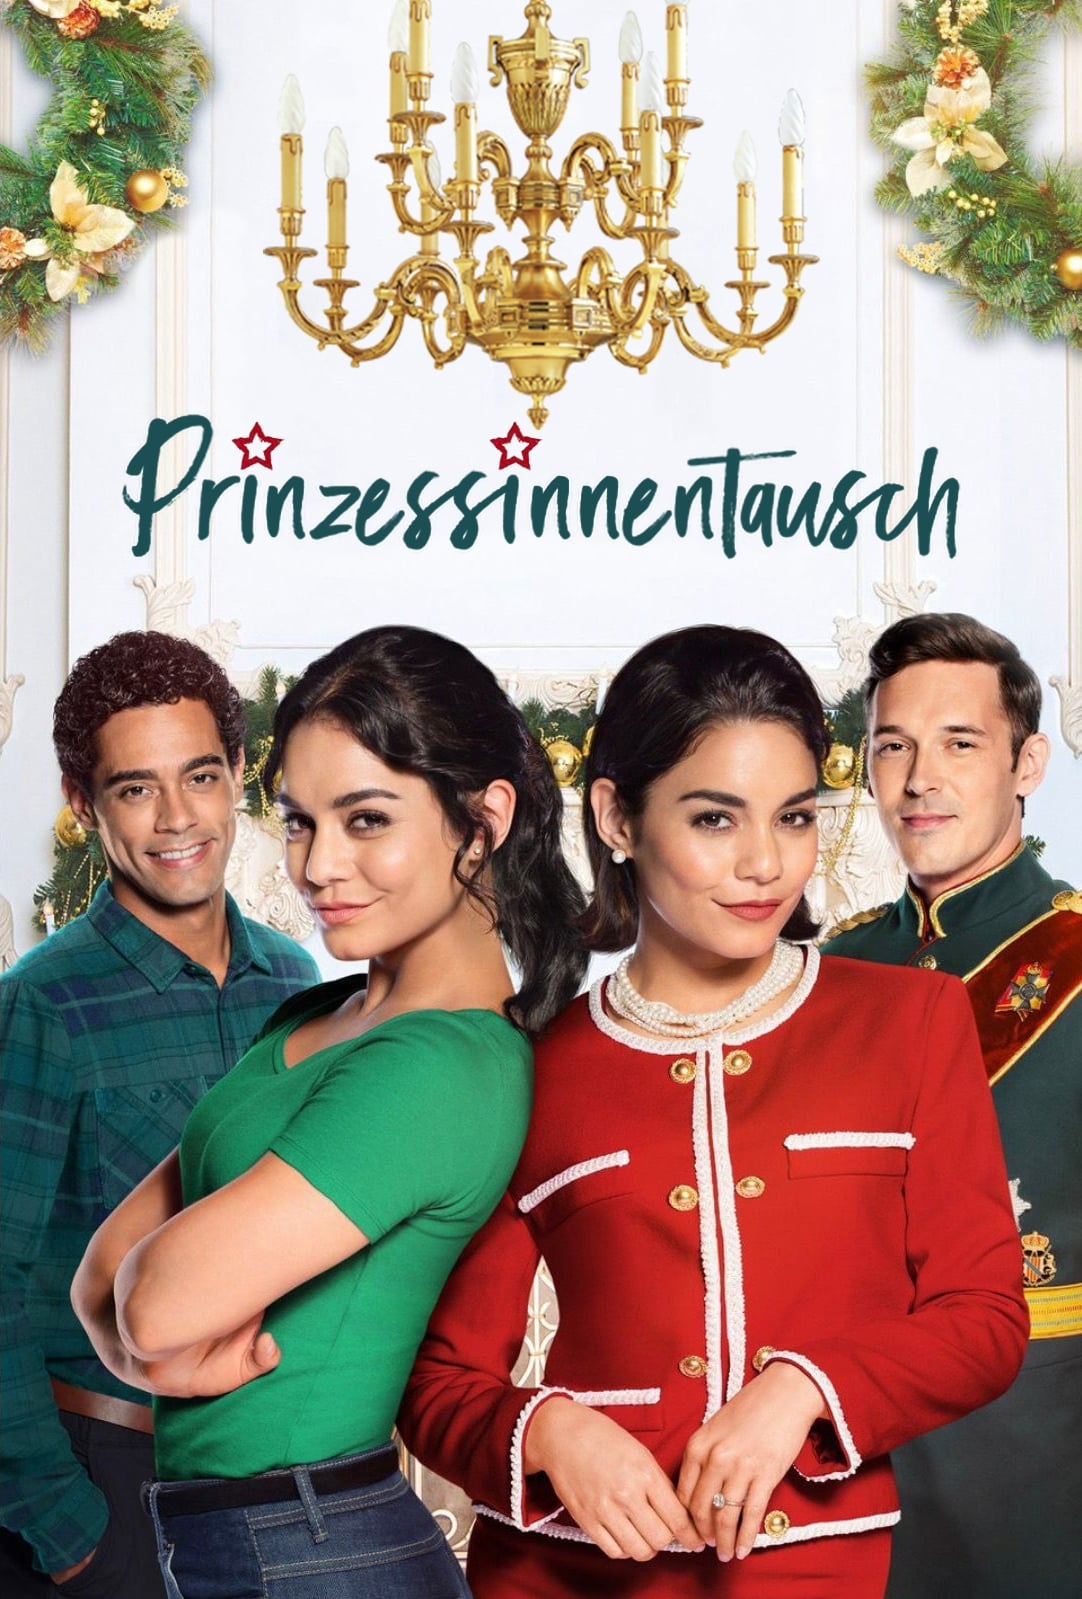 Prinzessinnentausch (2018) Ganzer Film Deutsch